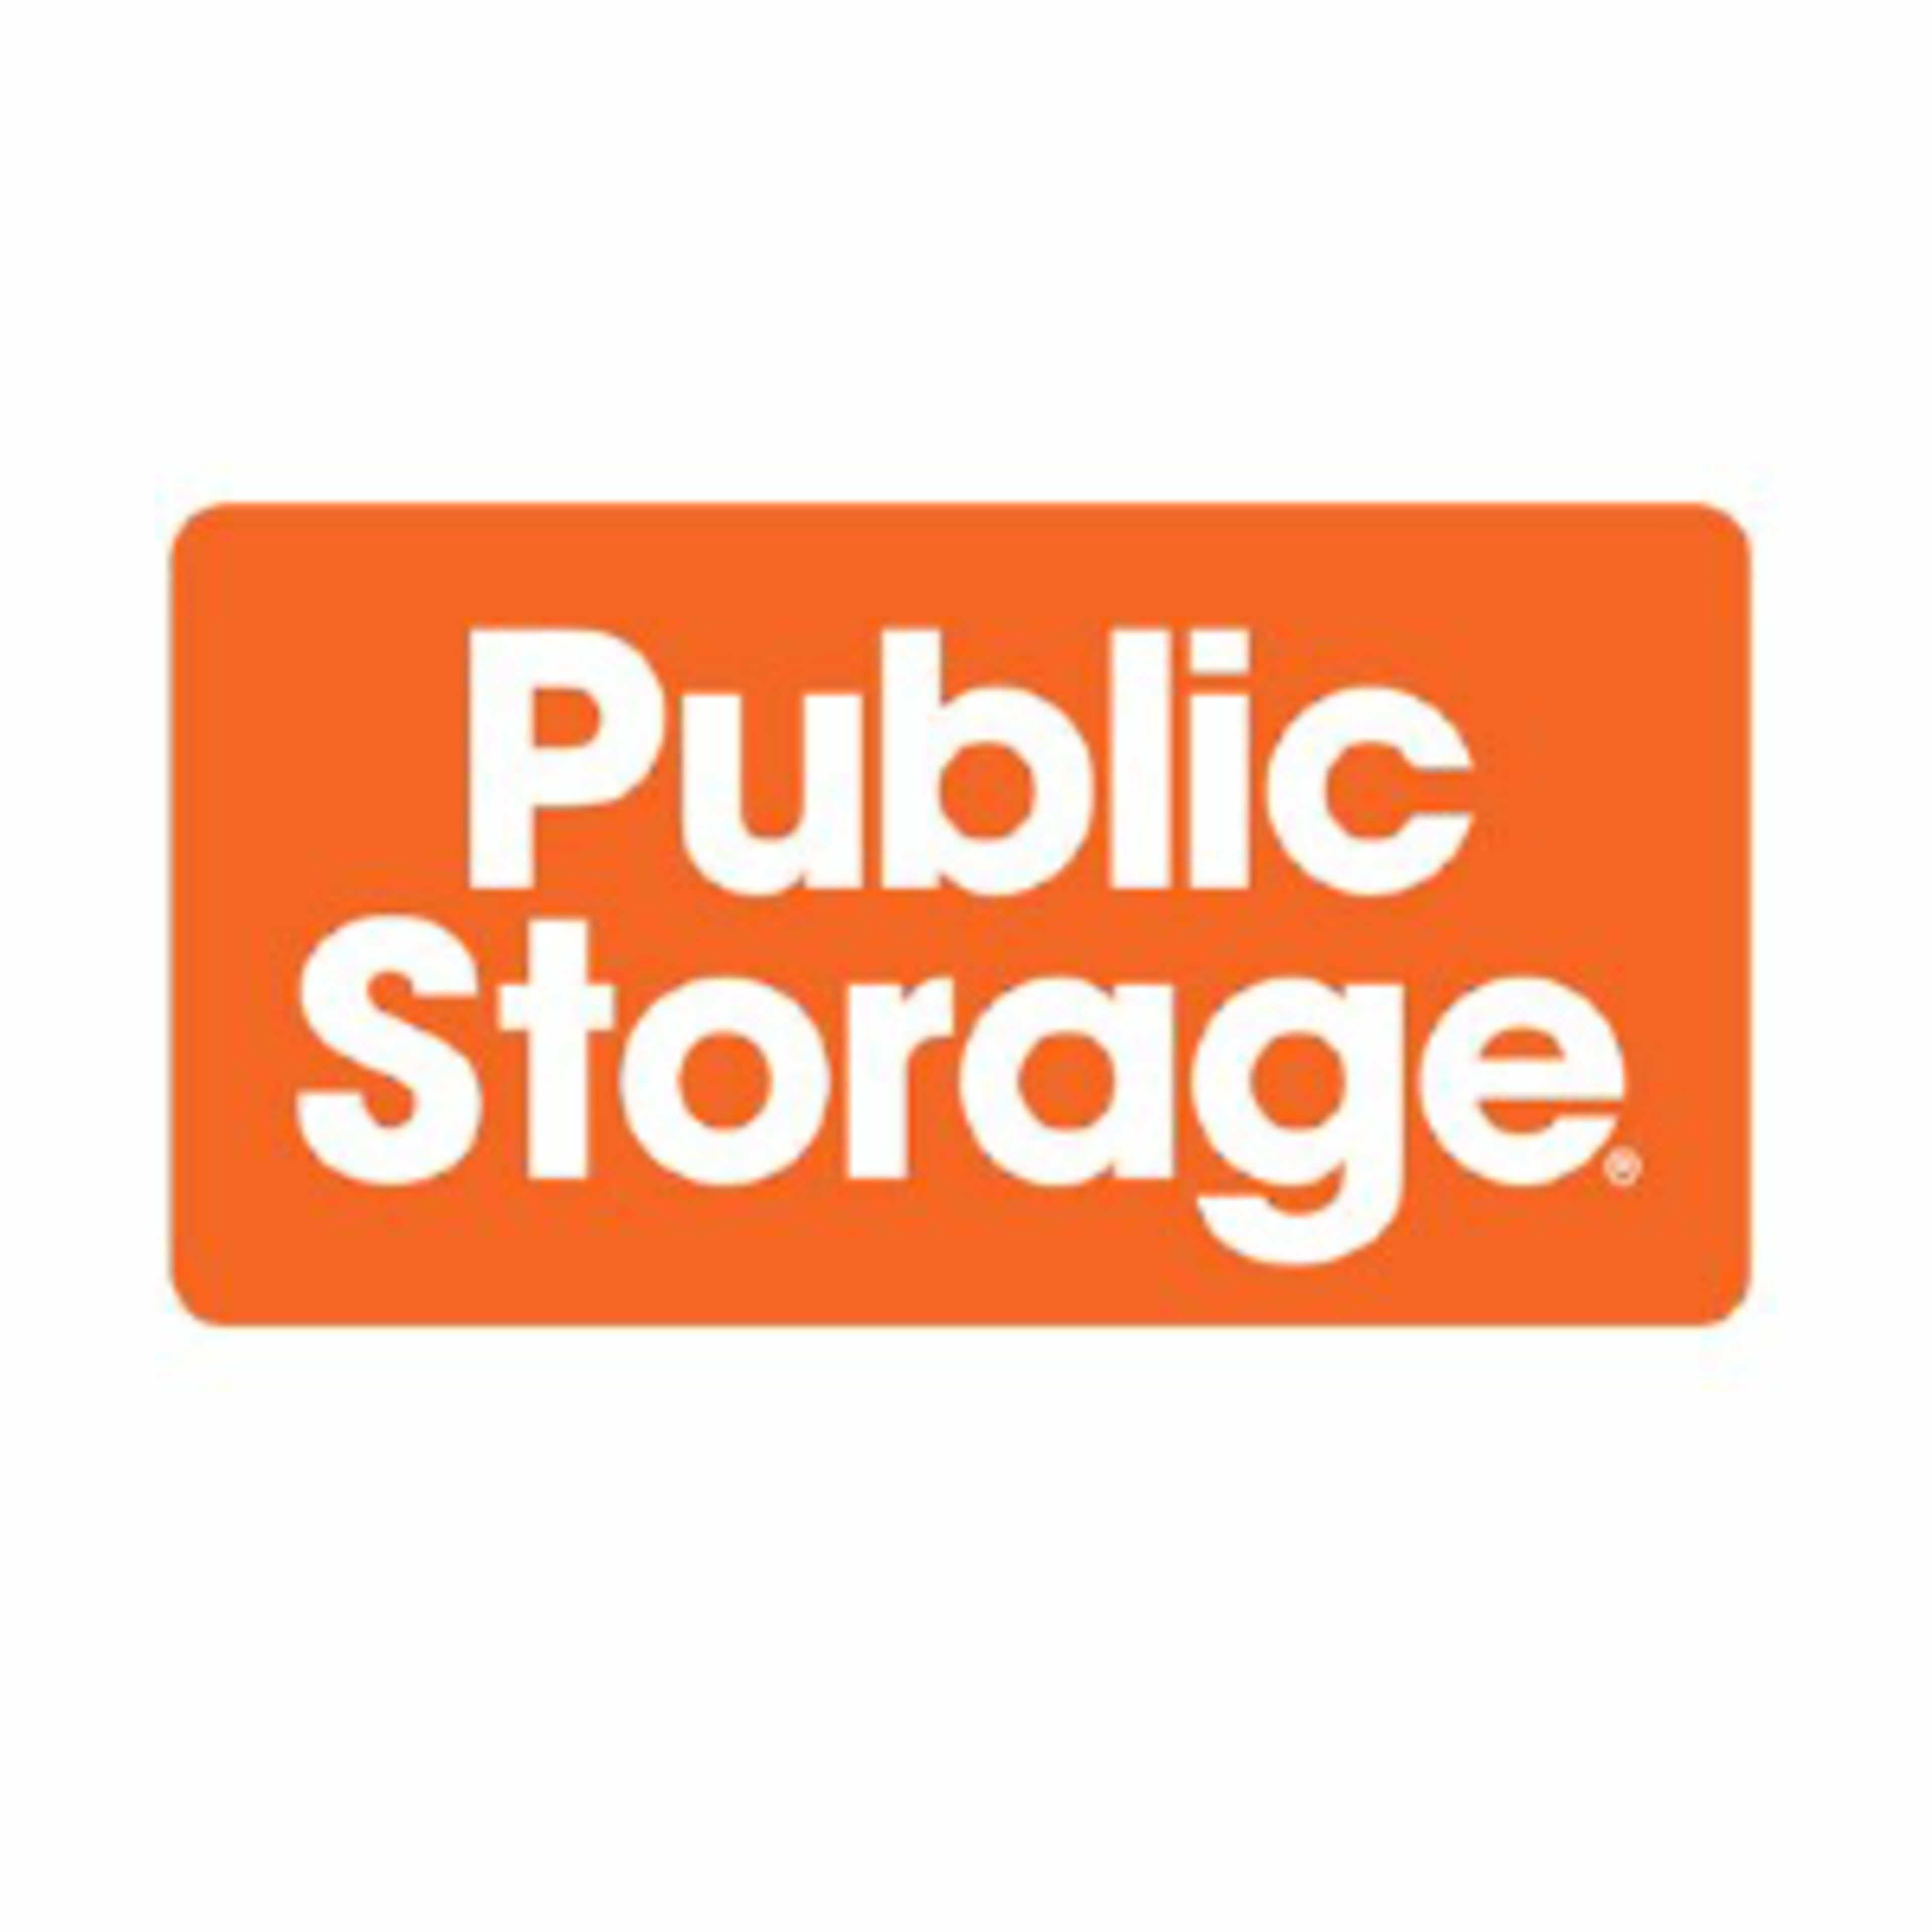 Public Storage Code